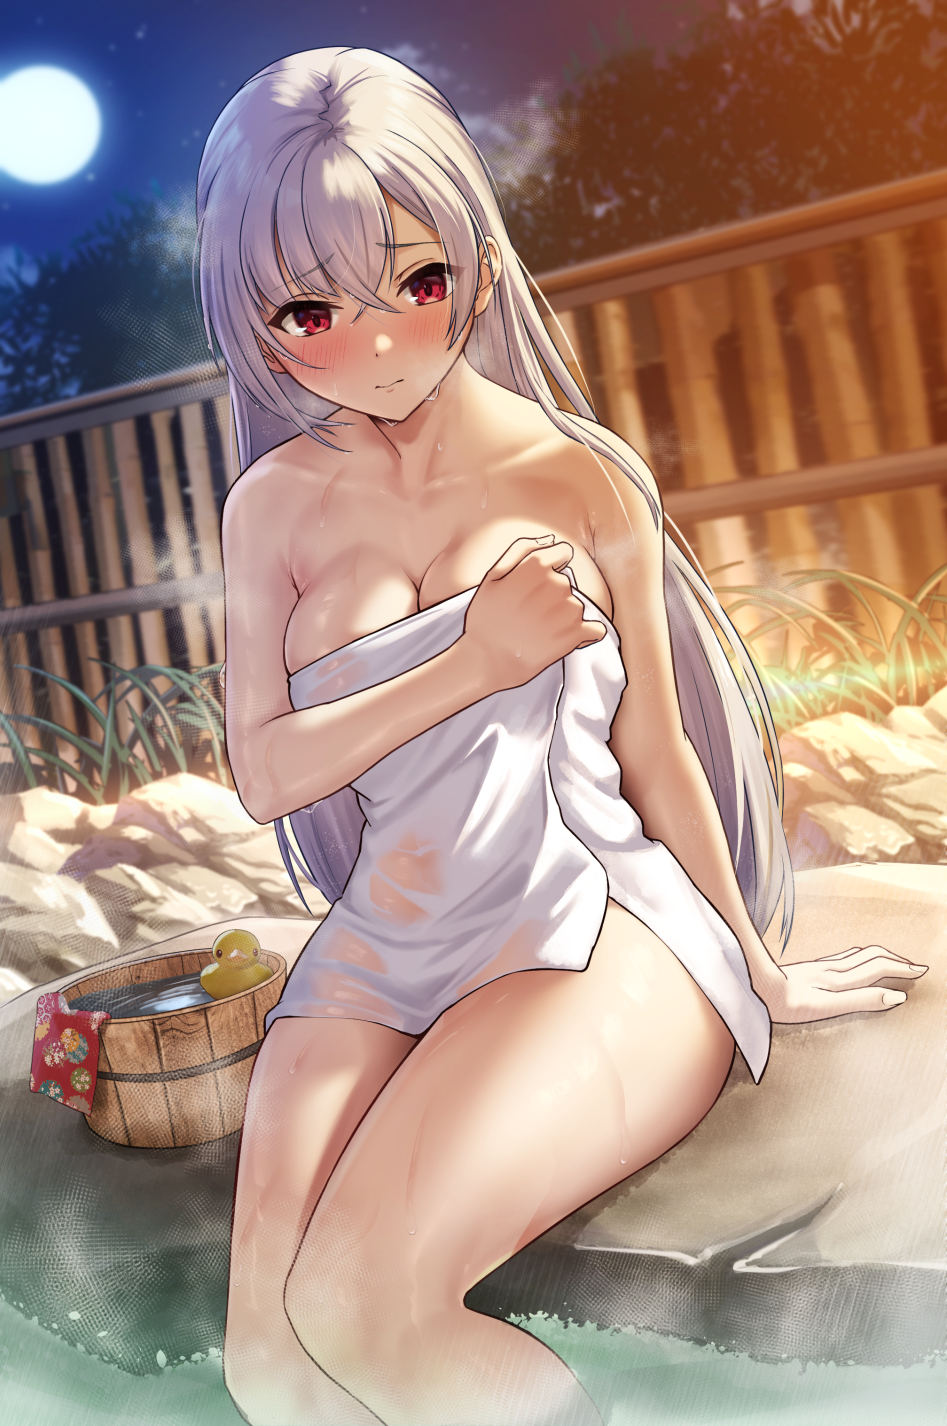 Anime 947x1426 SOLar anime anime girls artwork silver hair long hair red eyes blushing hot spring towel cleavage bathing sitting